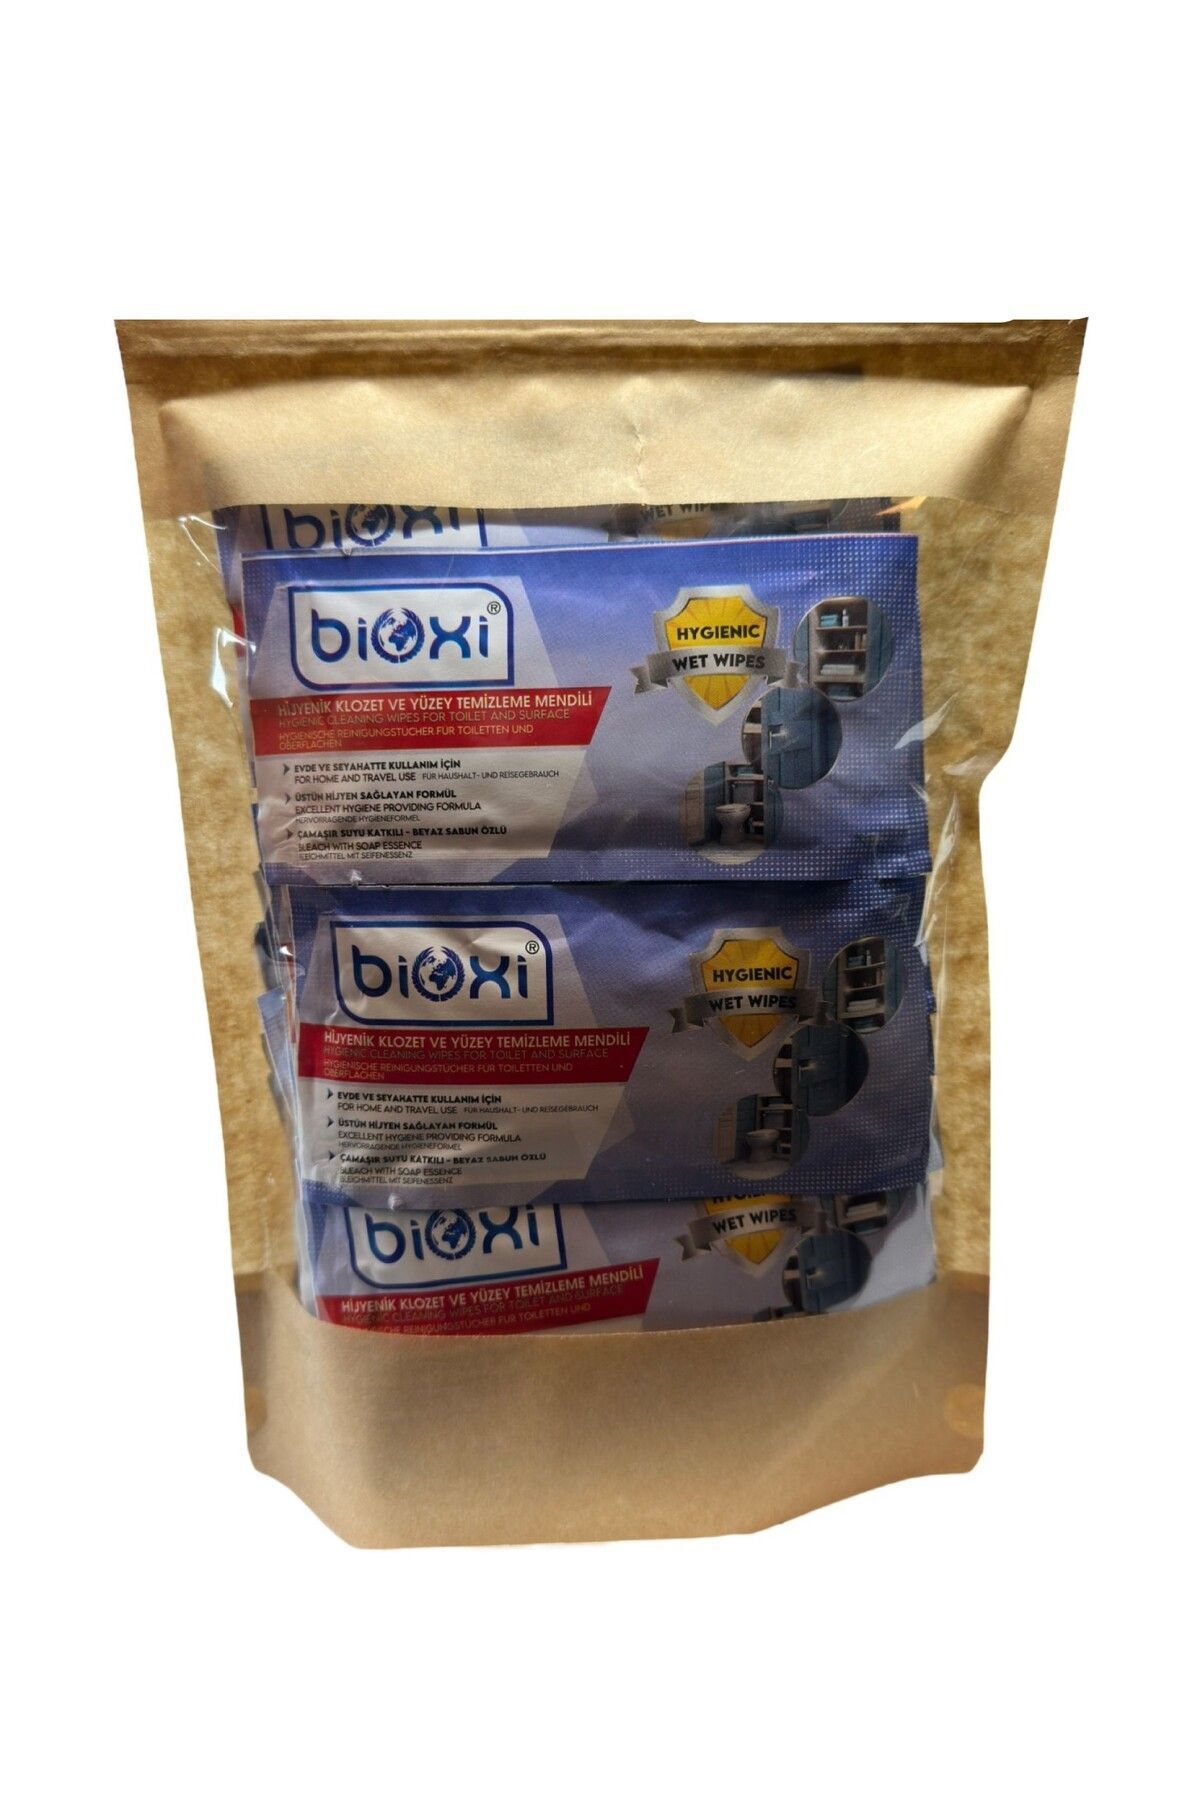 Bioxi ® Hijyenik Klozet Ve Yüzey Temizleme Mendili 30'lu Paket - Pratik Ve Etkili Temizlik Için Ideal